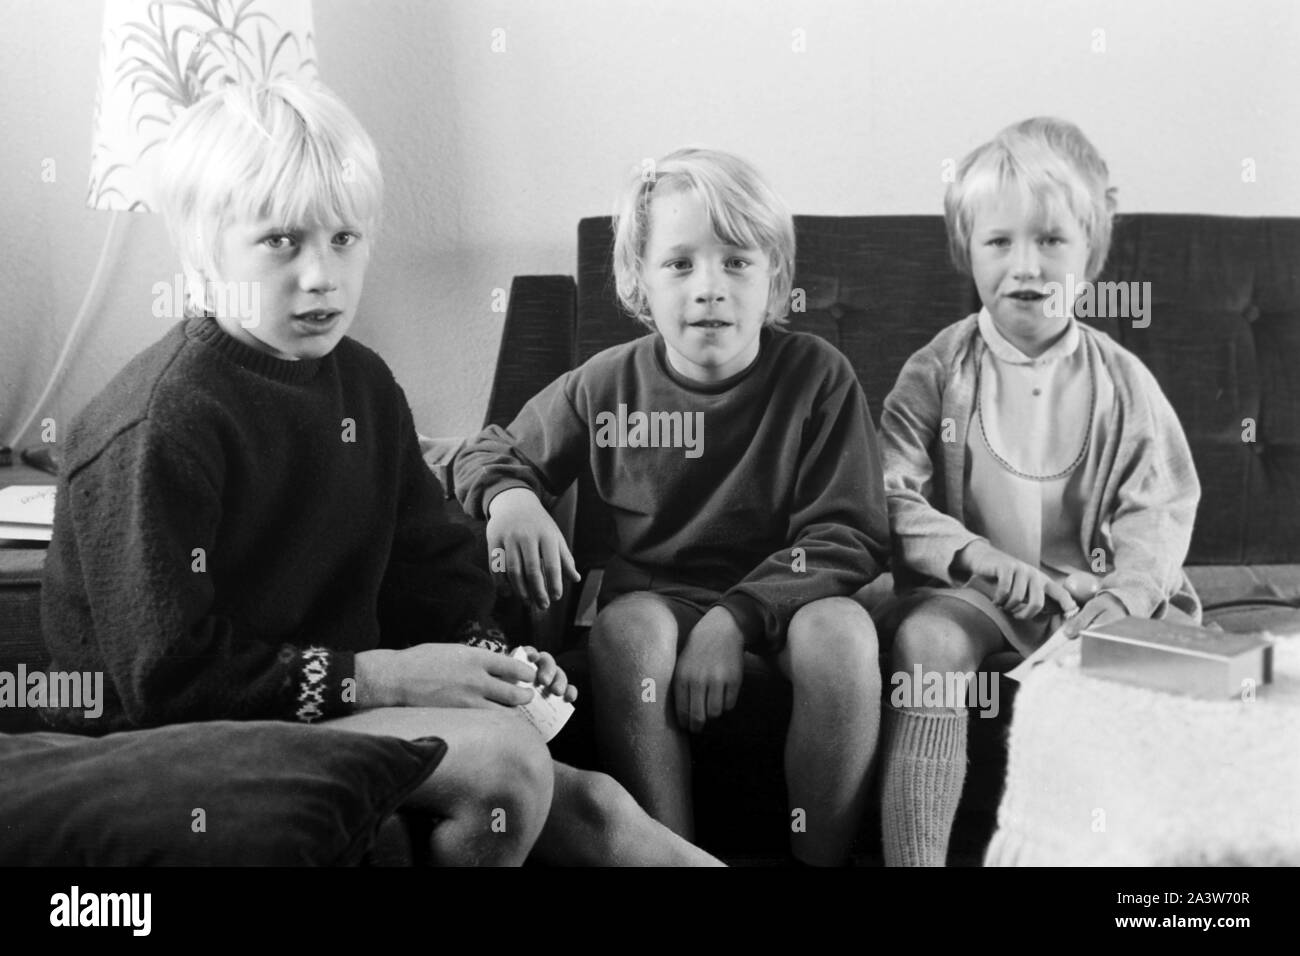 Kinder beschäftigen sich im Wohnzimmer, Deutschland frühe 1970er Jahre. Children at the living room, Germany early 1970s. Stock Photo